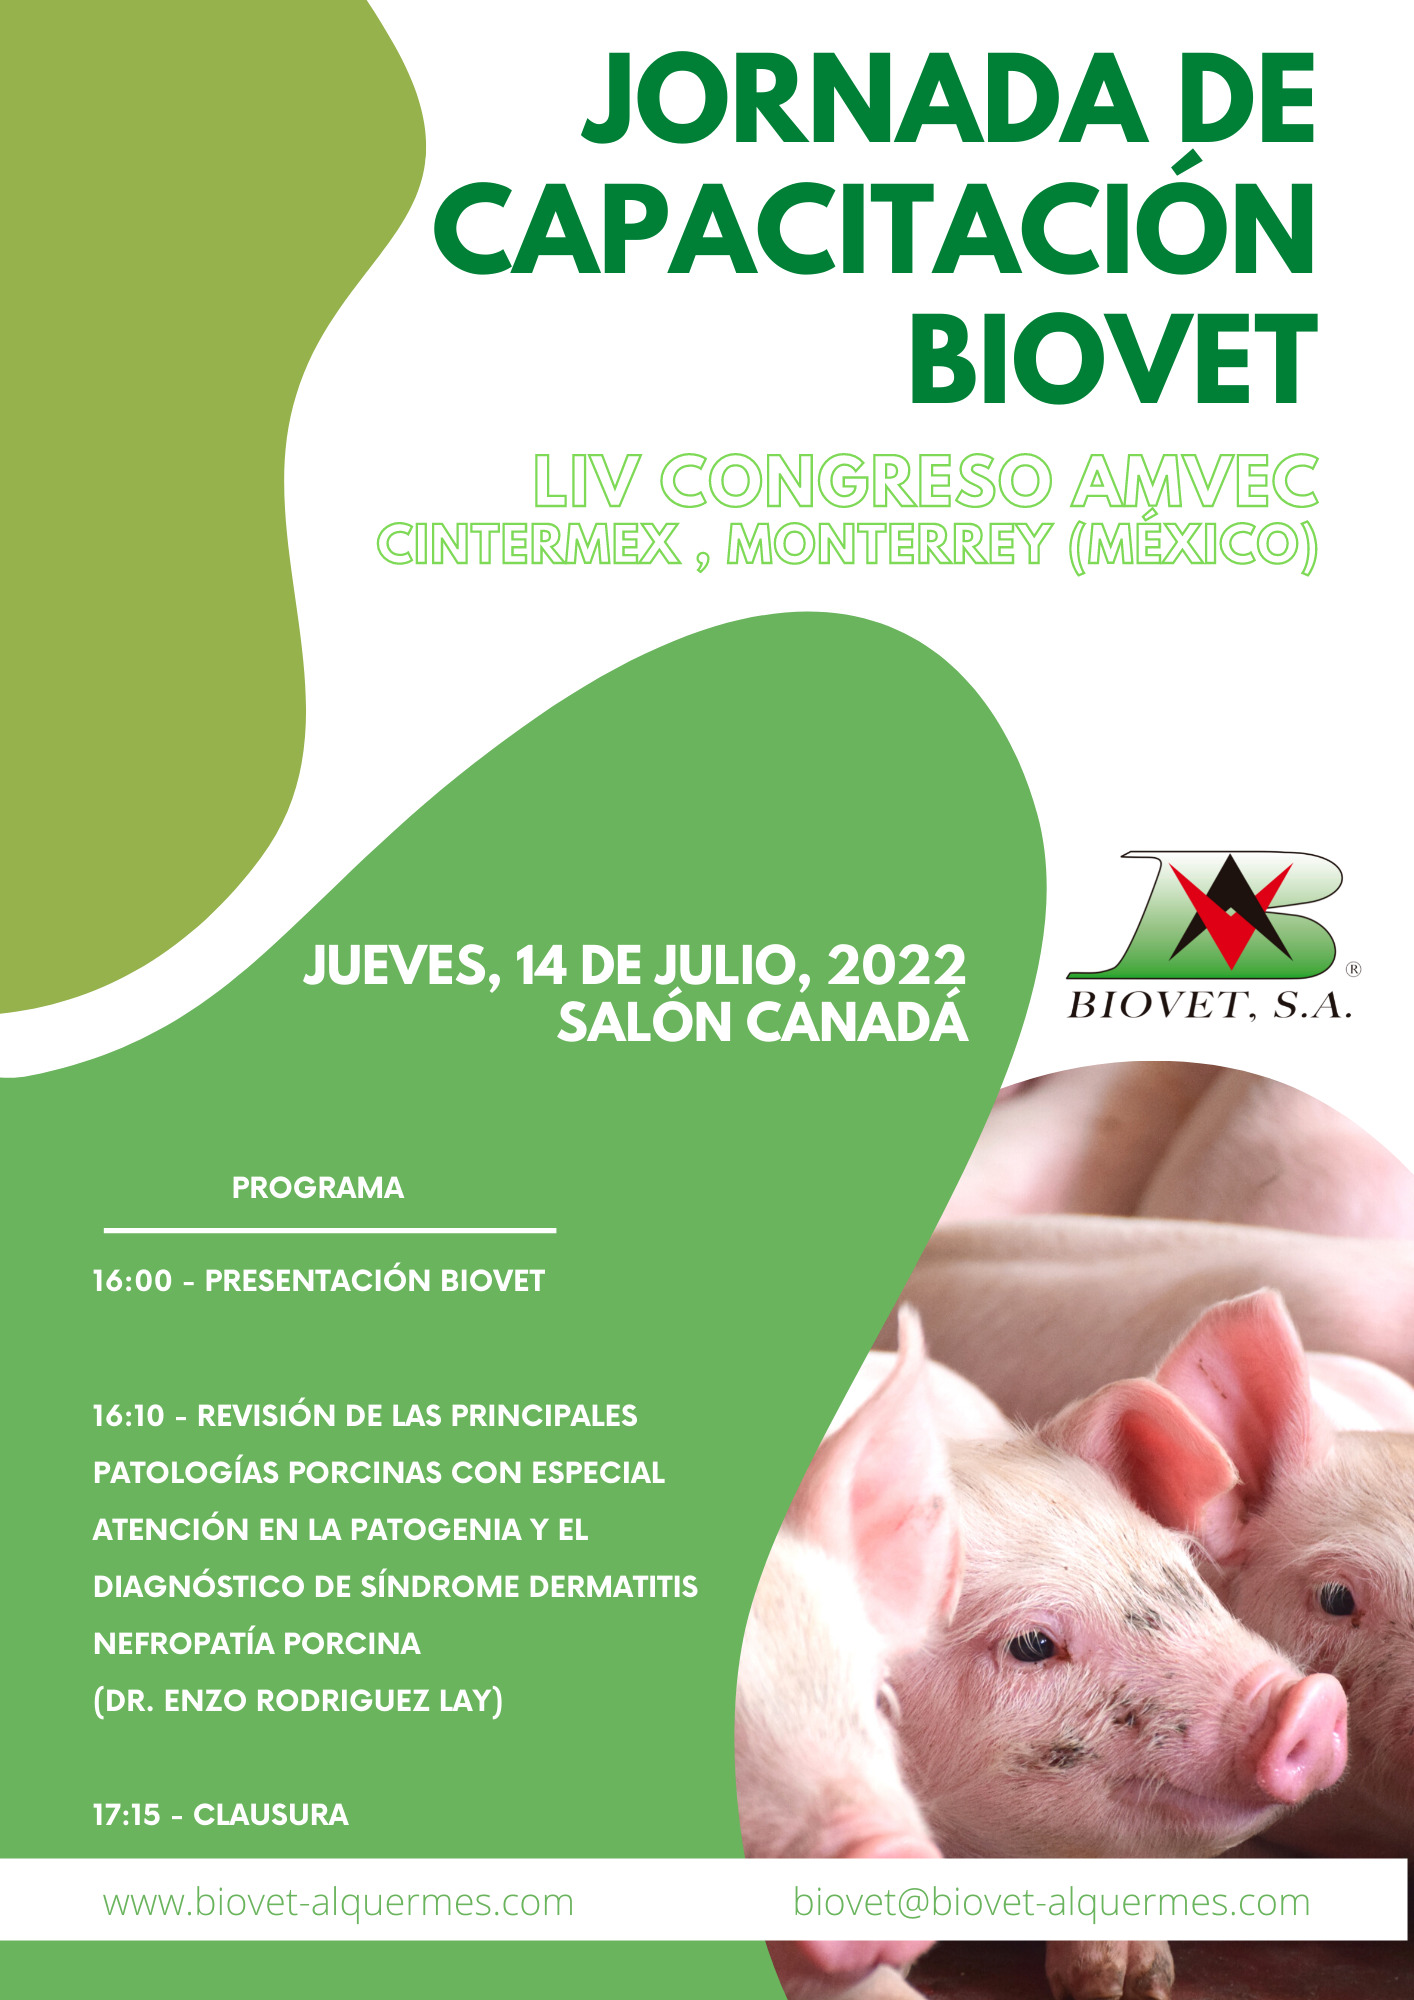 Jornada de Capacitación Biovet en el LIV Congreso de AMVEC